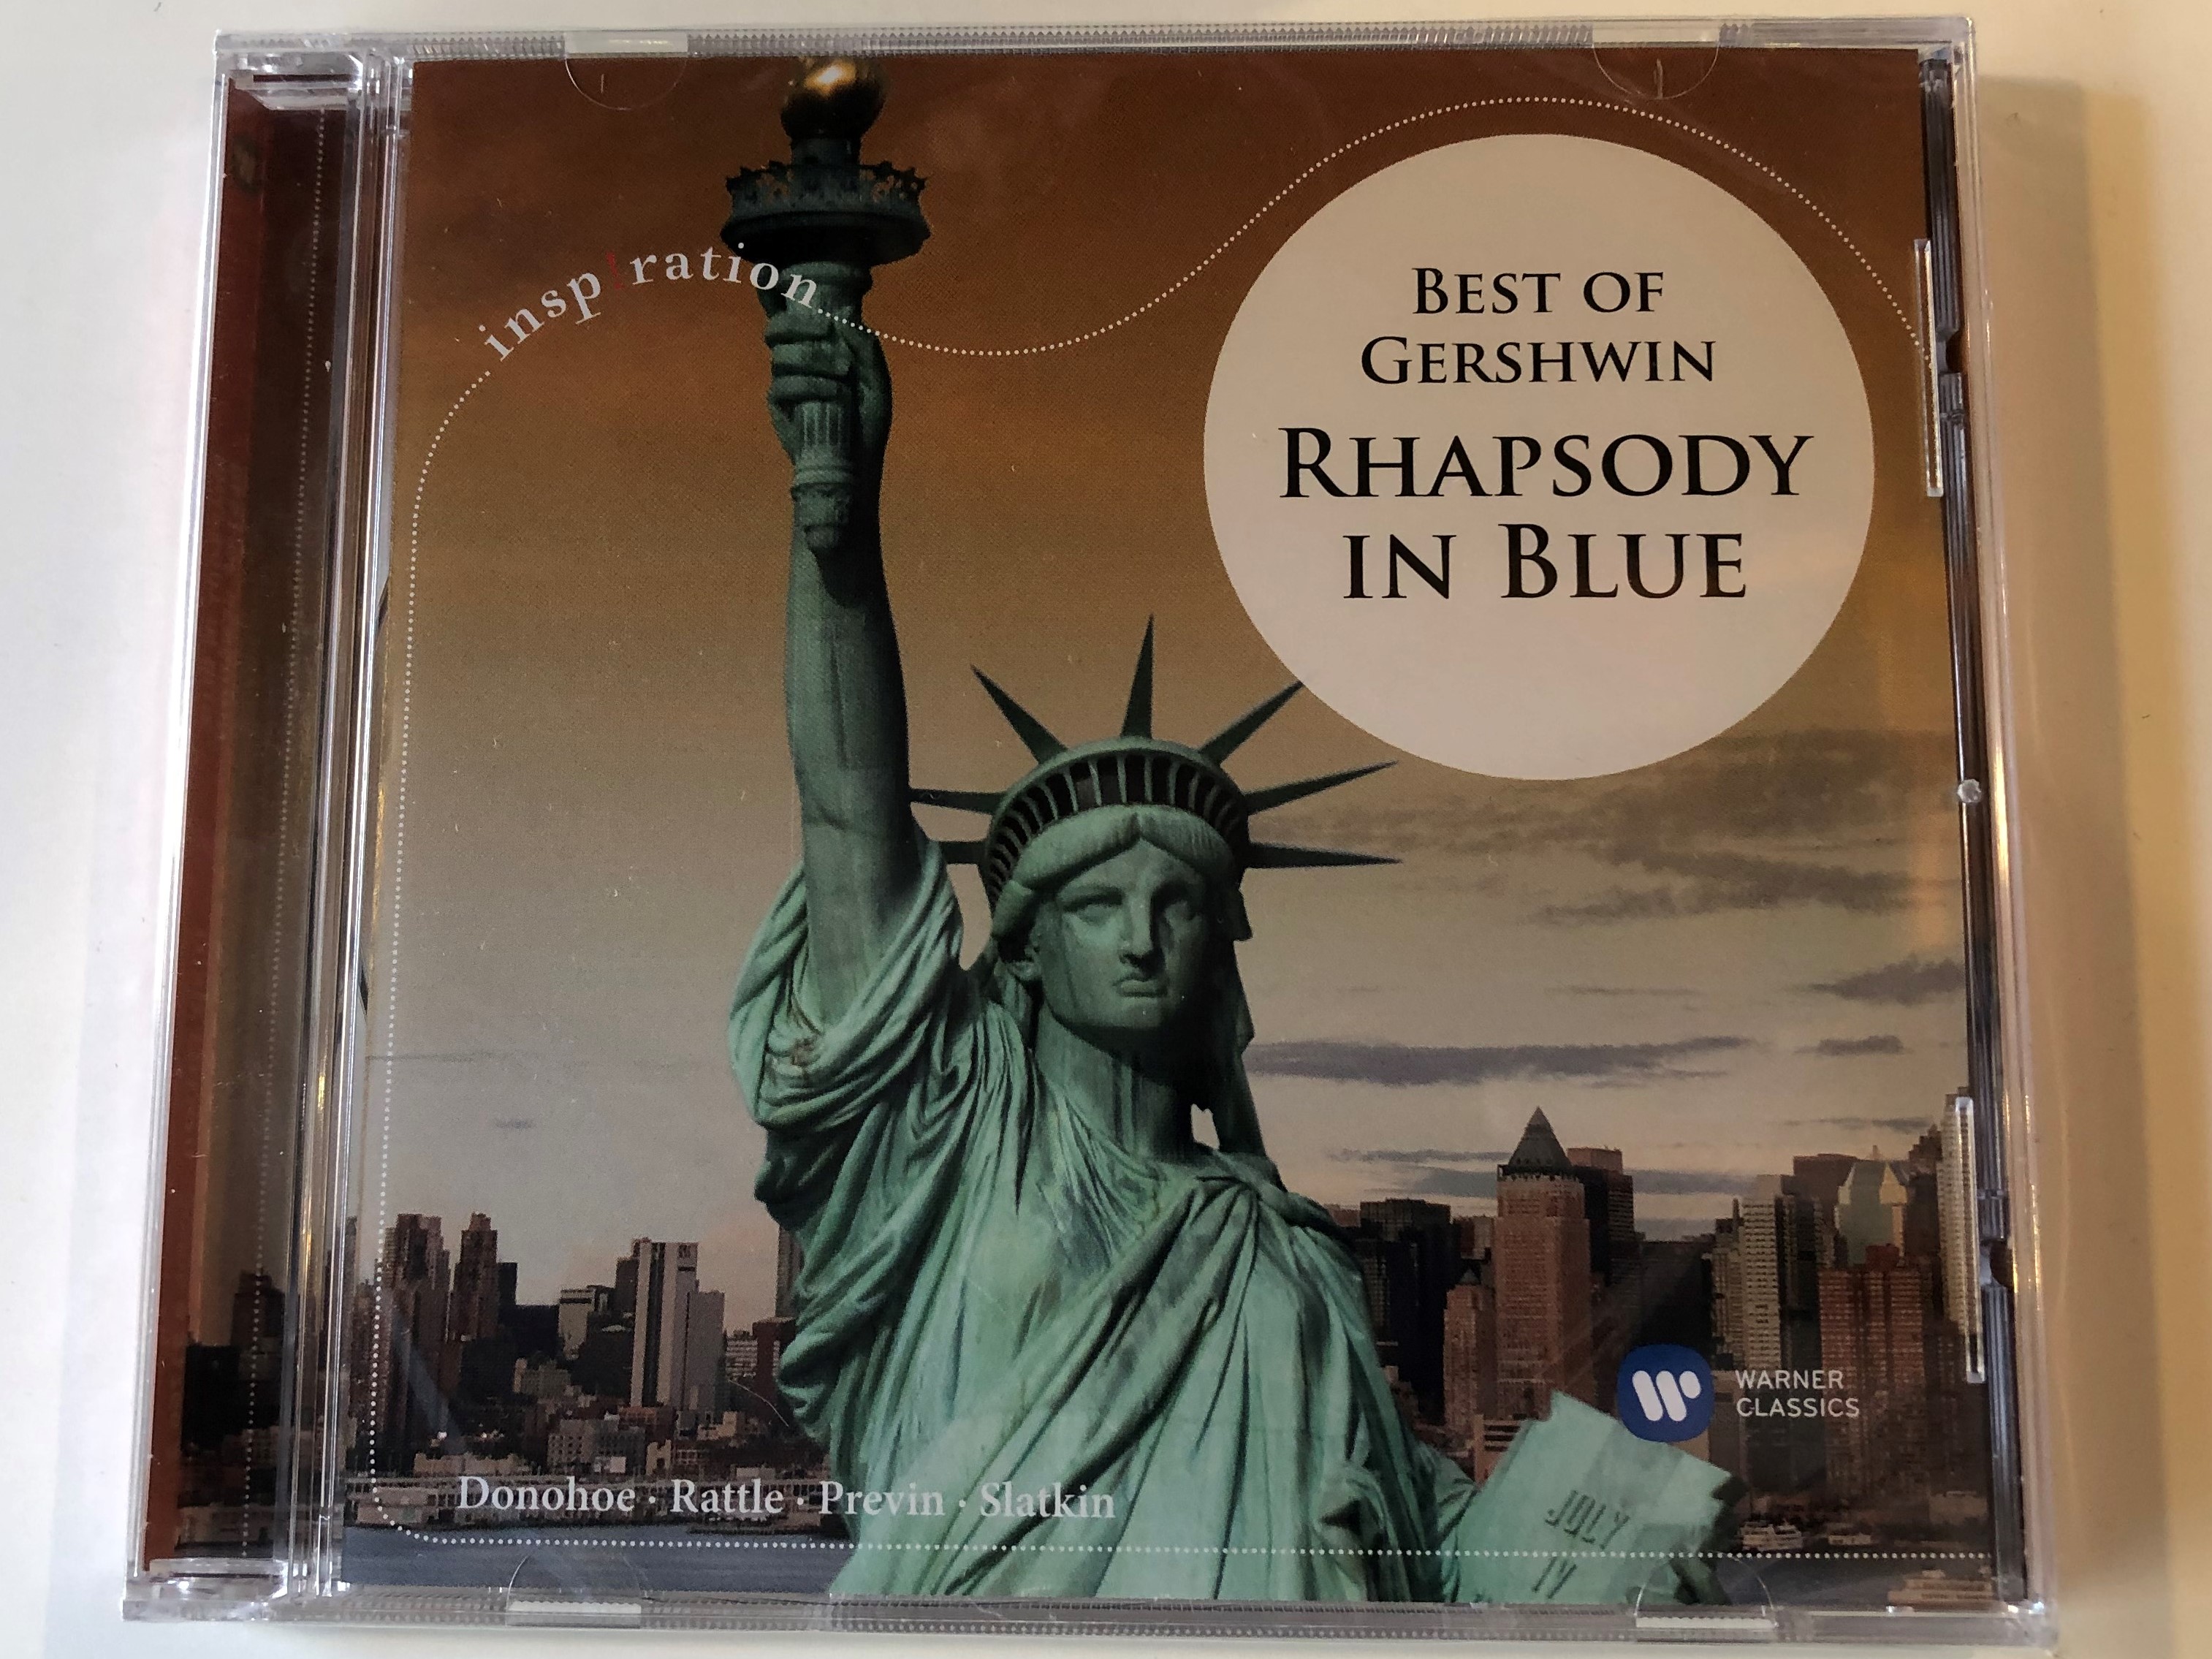 best-of-gershwin-rhapsody-in-blue-donohoe-rattle-previn-slatkin-warner-classics-audio-cd-2008-stereo-099962176620-1-.jpg